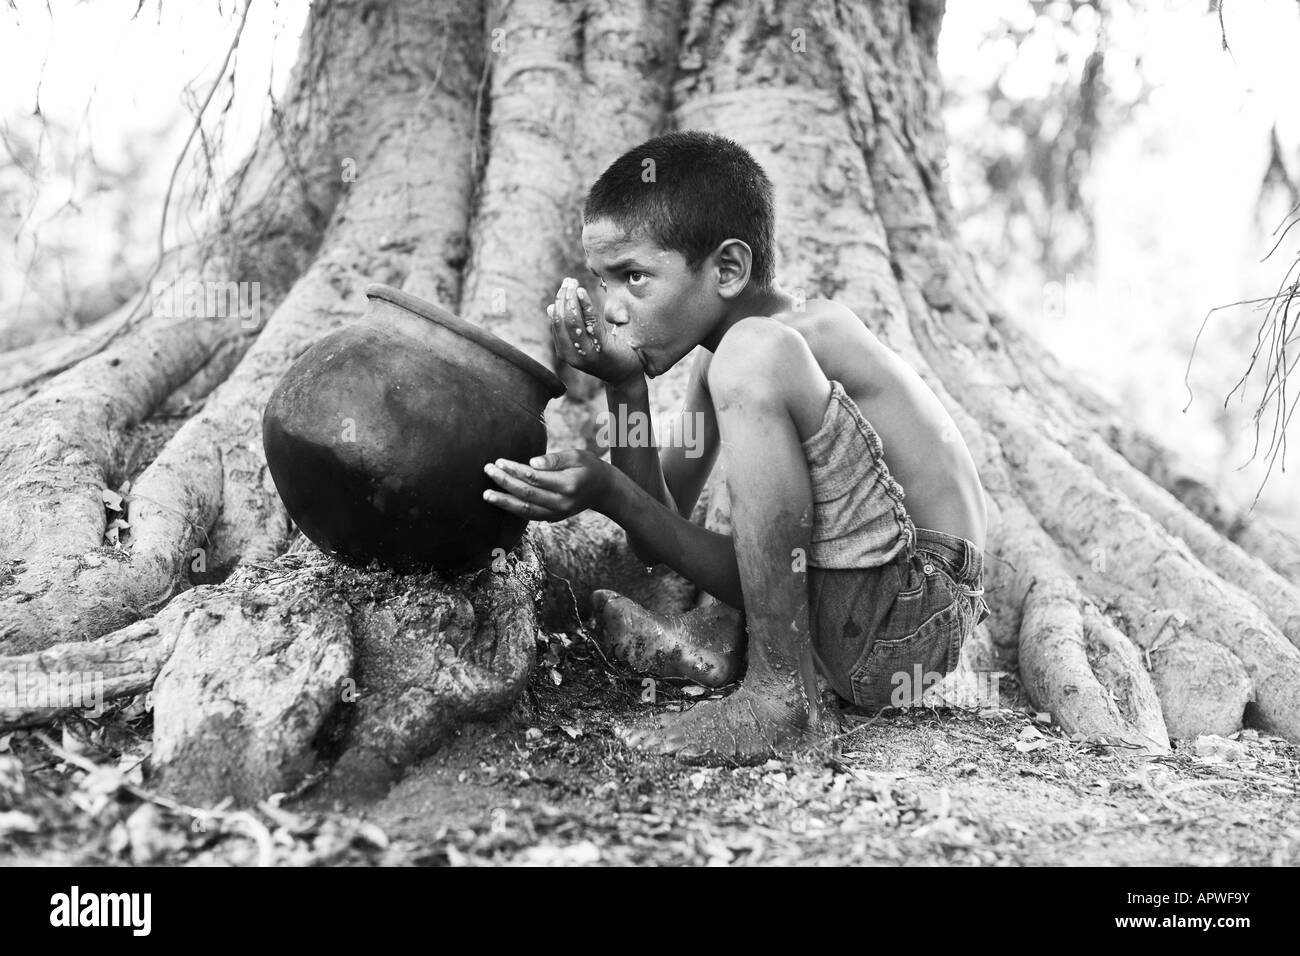 Jeune Indien l'eau potable à partir d'un pot en argile sur Banyan Tree. L'Andhra Pradesh, Inde. Le noir et blanc Banque D'Images